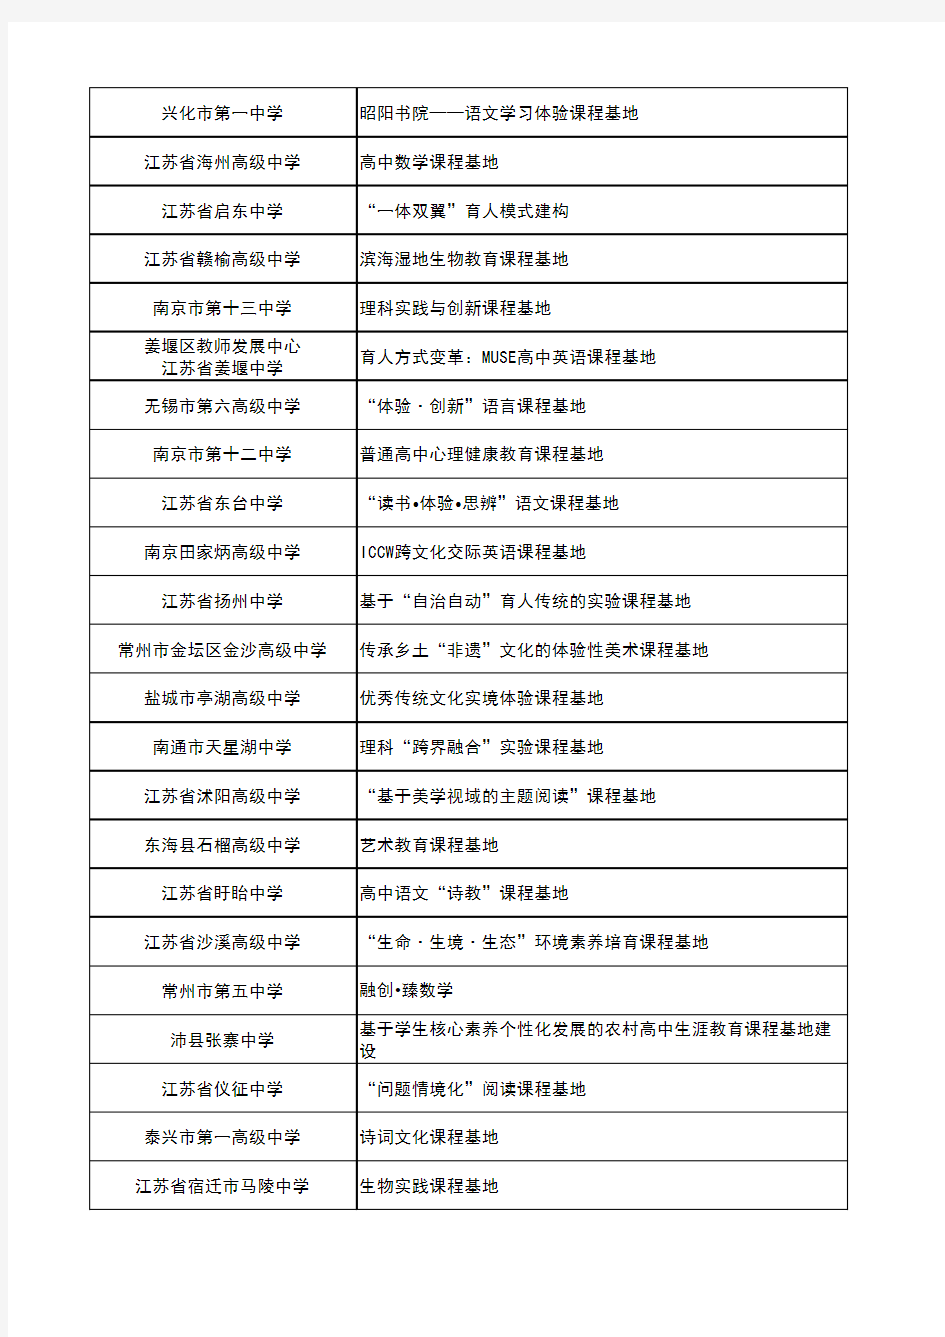 2020年江苏省基础教育内涵建设项目名单